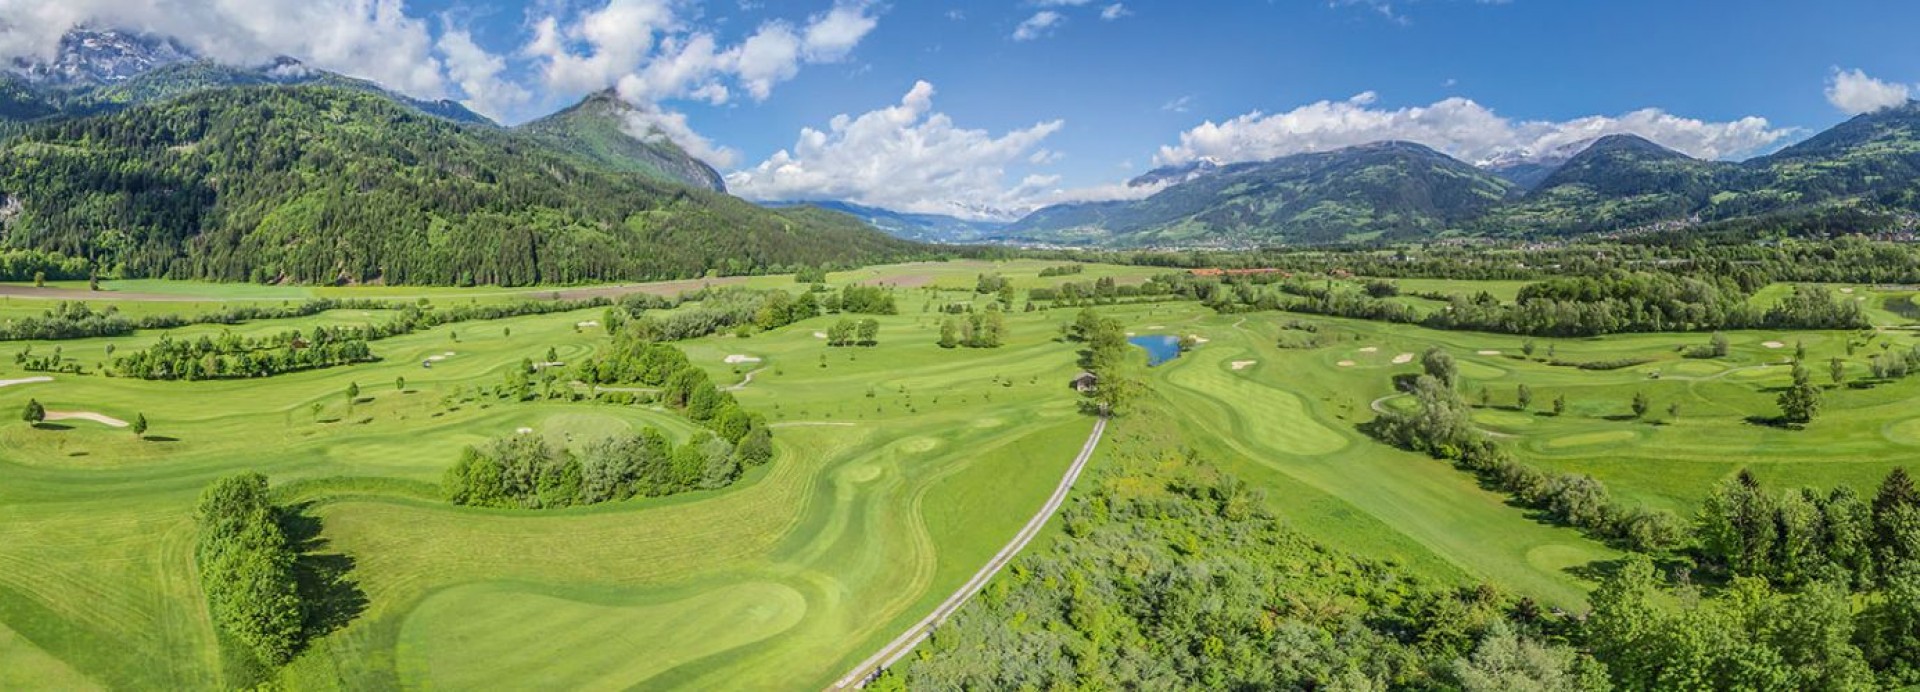 Dolomiten Golf Resort  | Golfové zájezdy, golfová dovolená, luxusní golf